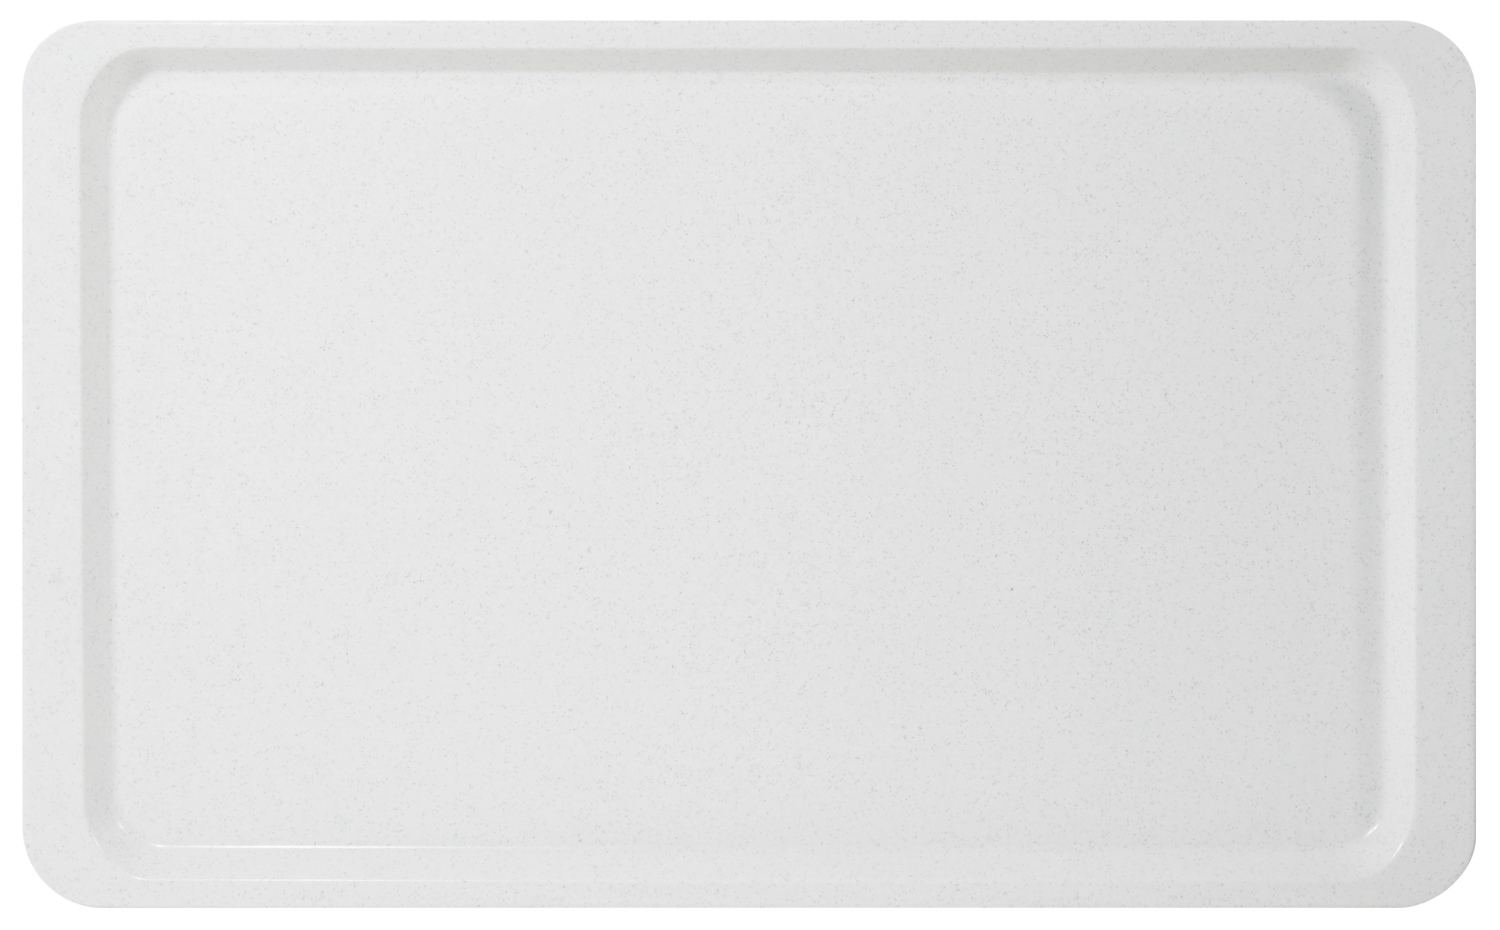 Tablett EASY Euronorm EN 1/1, Farbe: perlweiß, aus glasfaserverstärktem Polyesterharz, Länge: 53 cm, Breite: 37 cm, Höhe: 1,6 cm